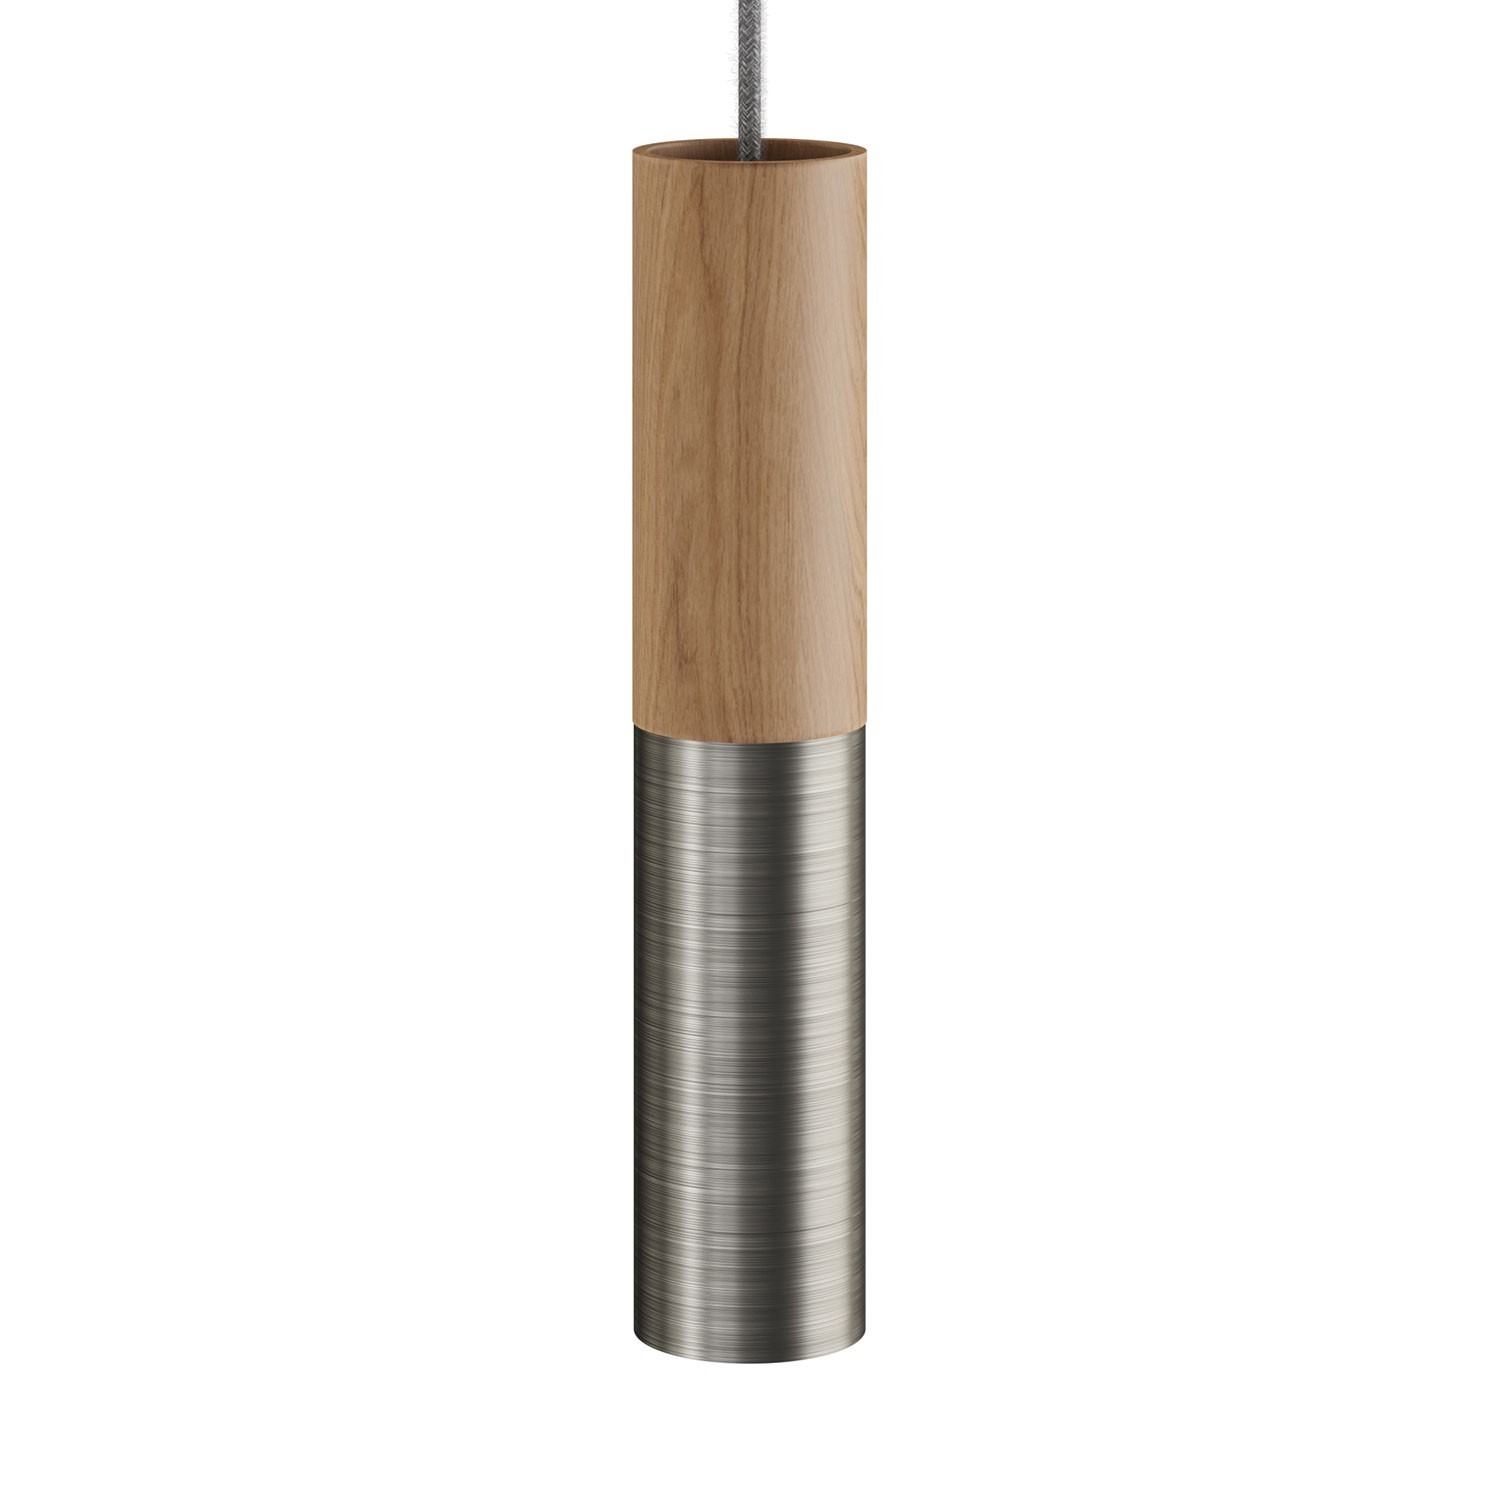 Tub-E14, tube en bois et métal pour spots avec douille double anneau E14